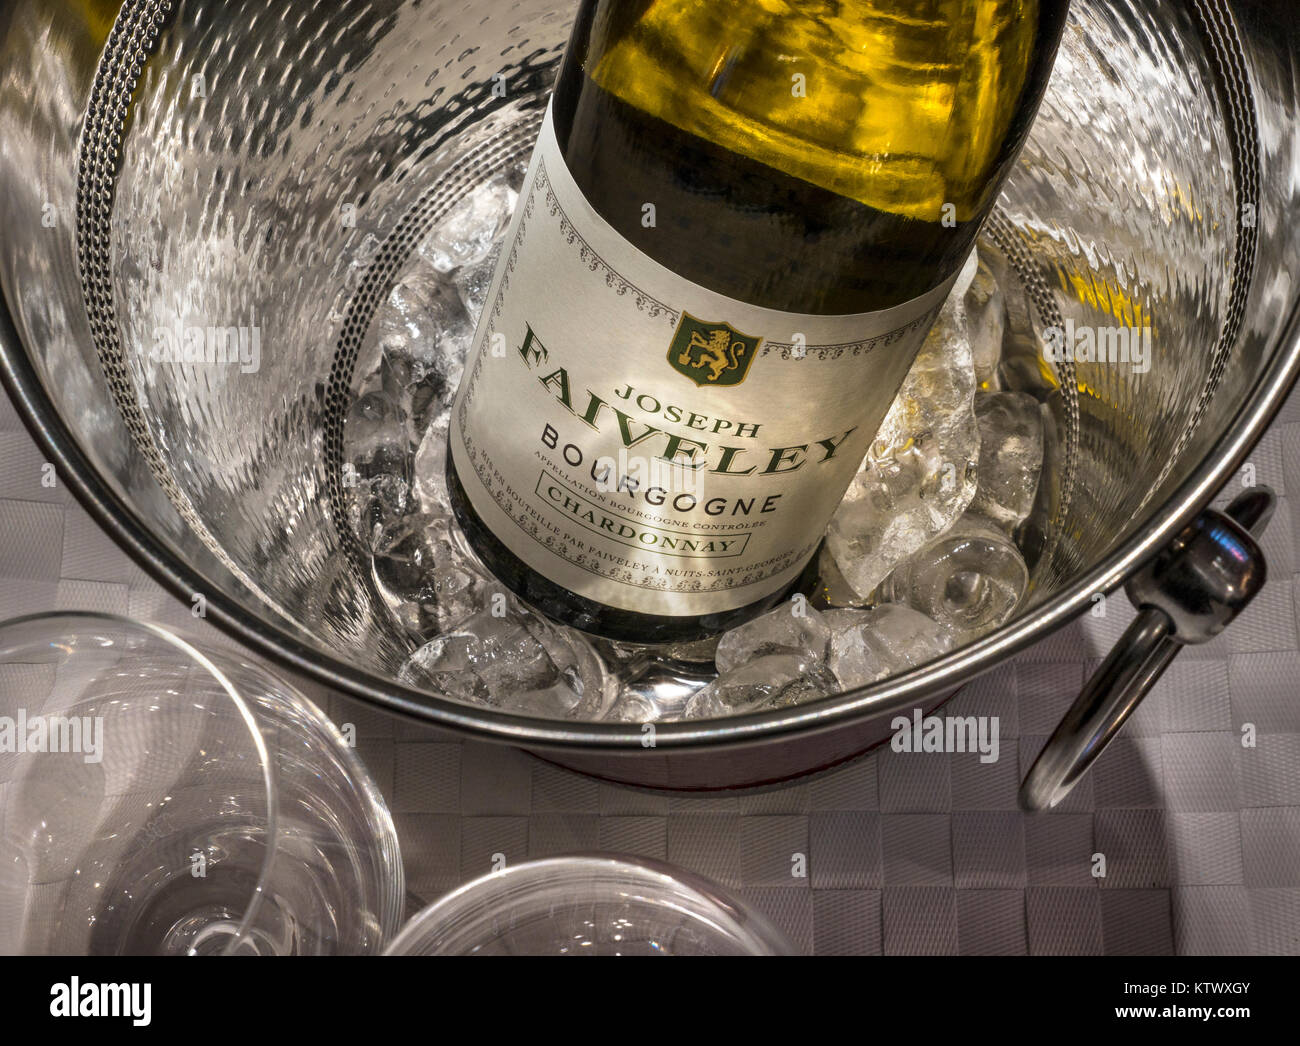 Joseph Faiveley Chardonnay trocken Weißer Burgunder Flasche, Ansicht schließen, die auf dem Etikett Wein schaufel Kühler mit Eis, in der feinen Luxus Weinprobe Essbereich Lage Stockfoto